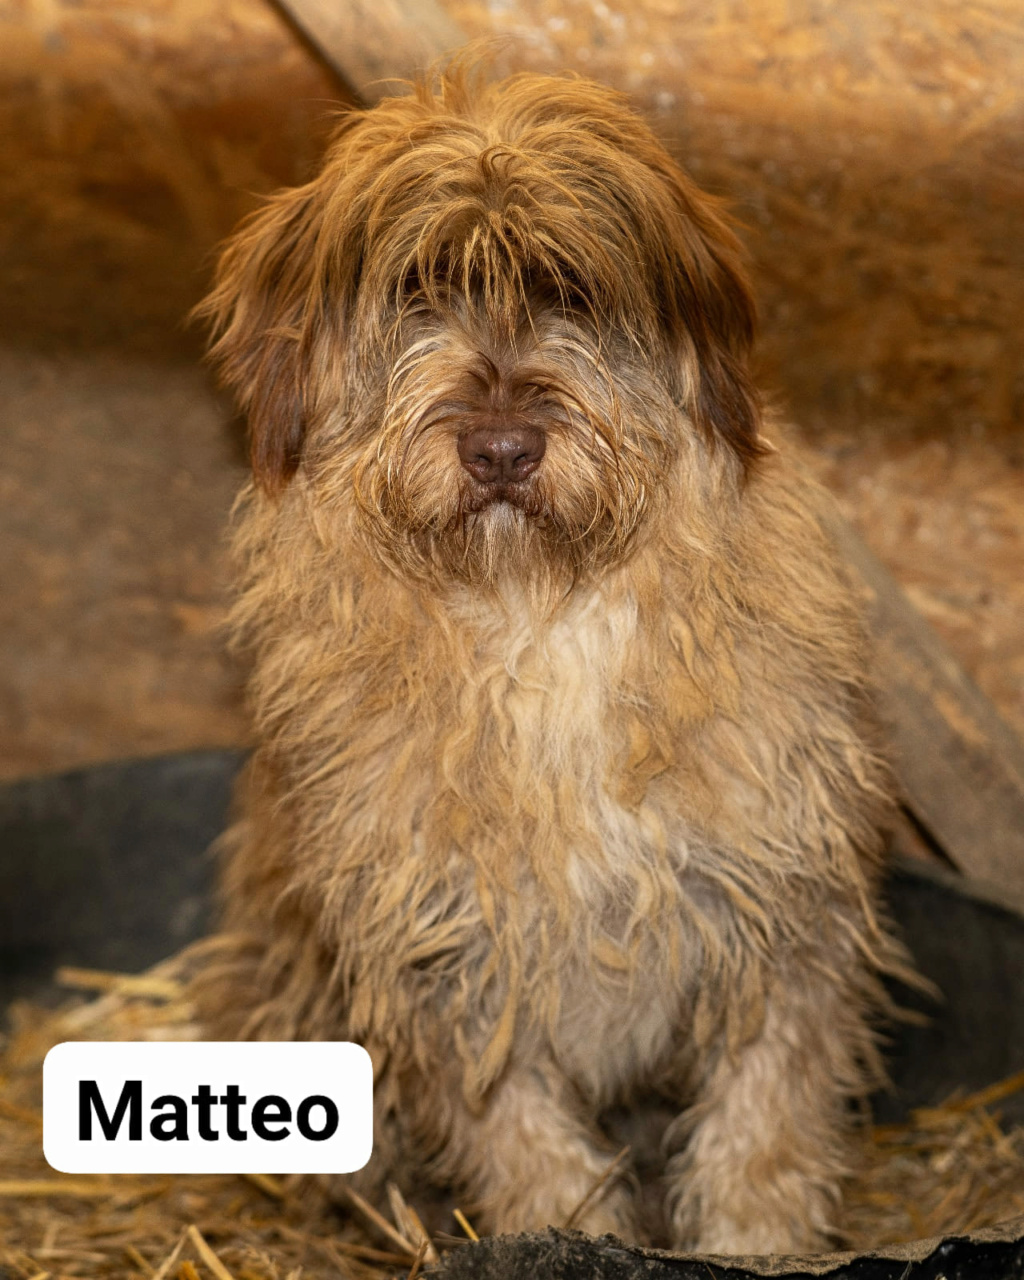 MATTEO – Mâle croisé de taille moyenne – Né en février 2022 environ – Refuge de GABRIELA - Page 2 Matteo20